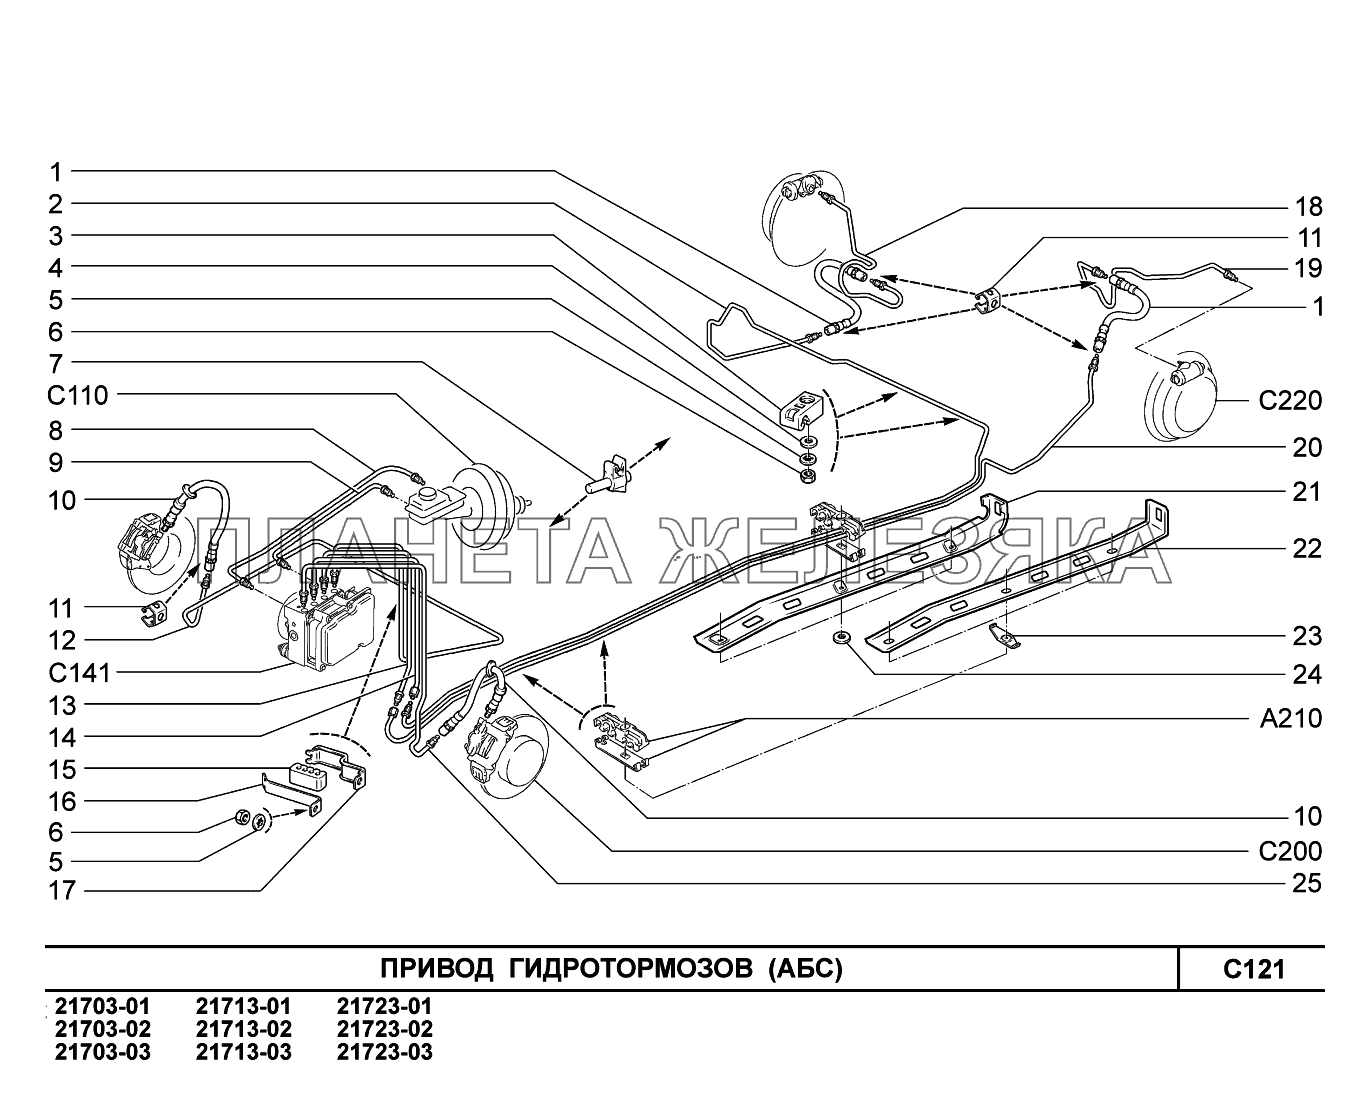 C121. Привод гидротормозов ВАЗ-2170 